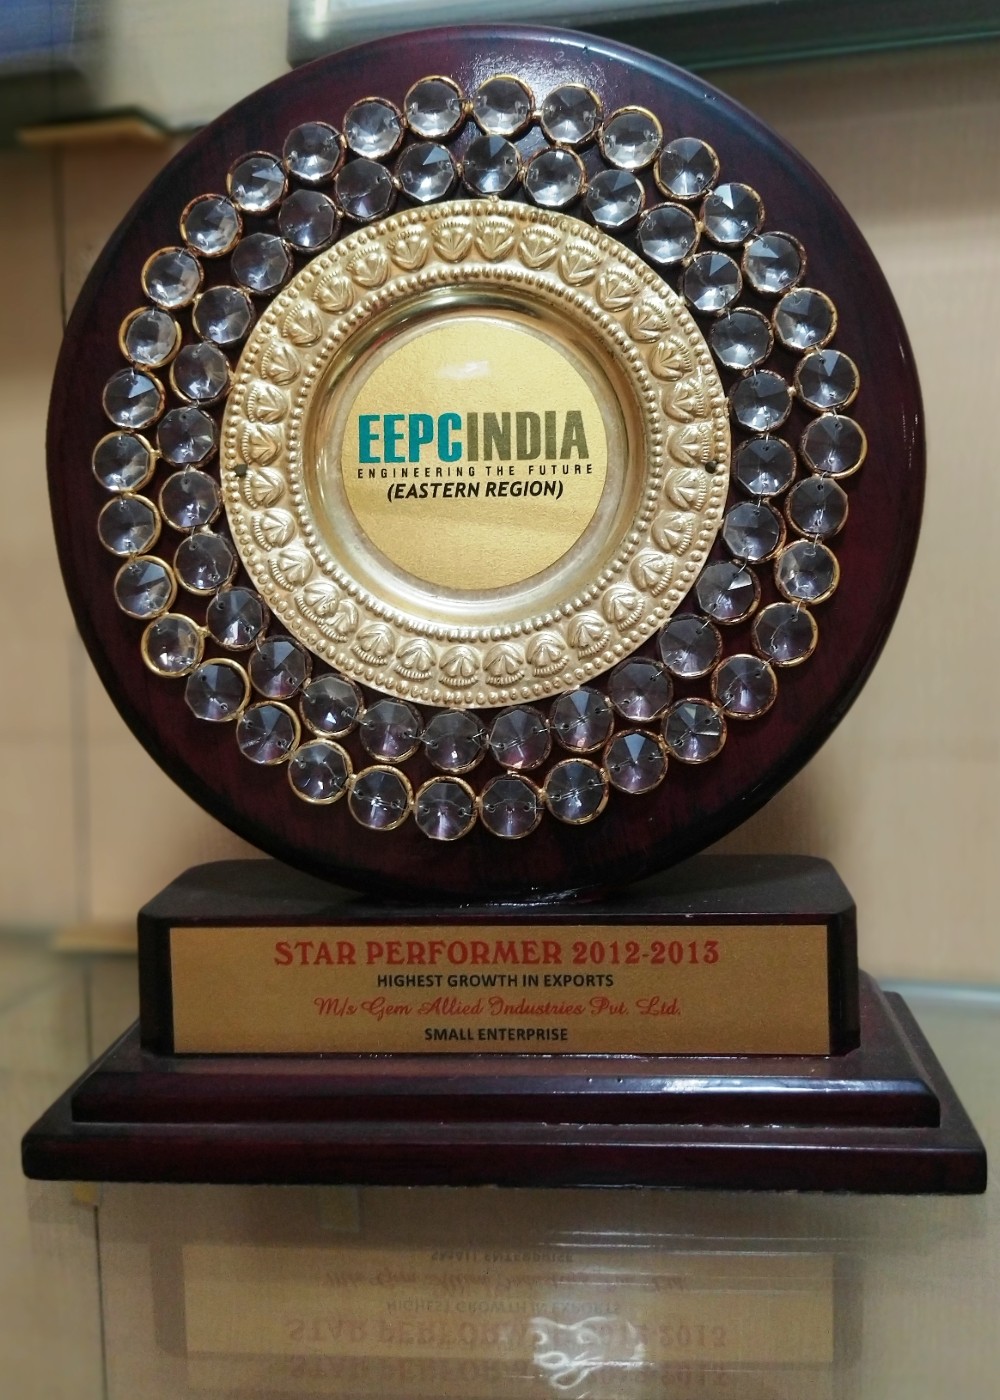 eepc-india-award